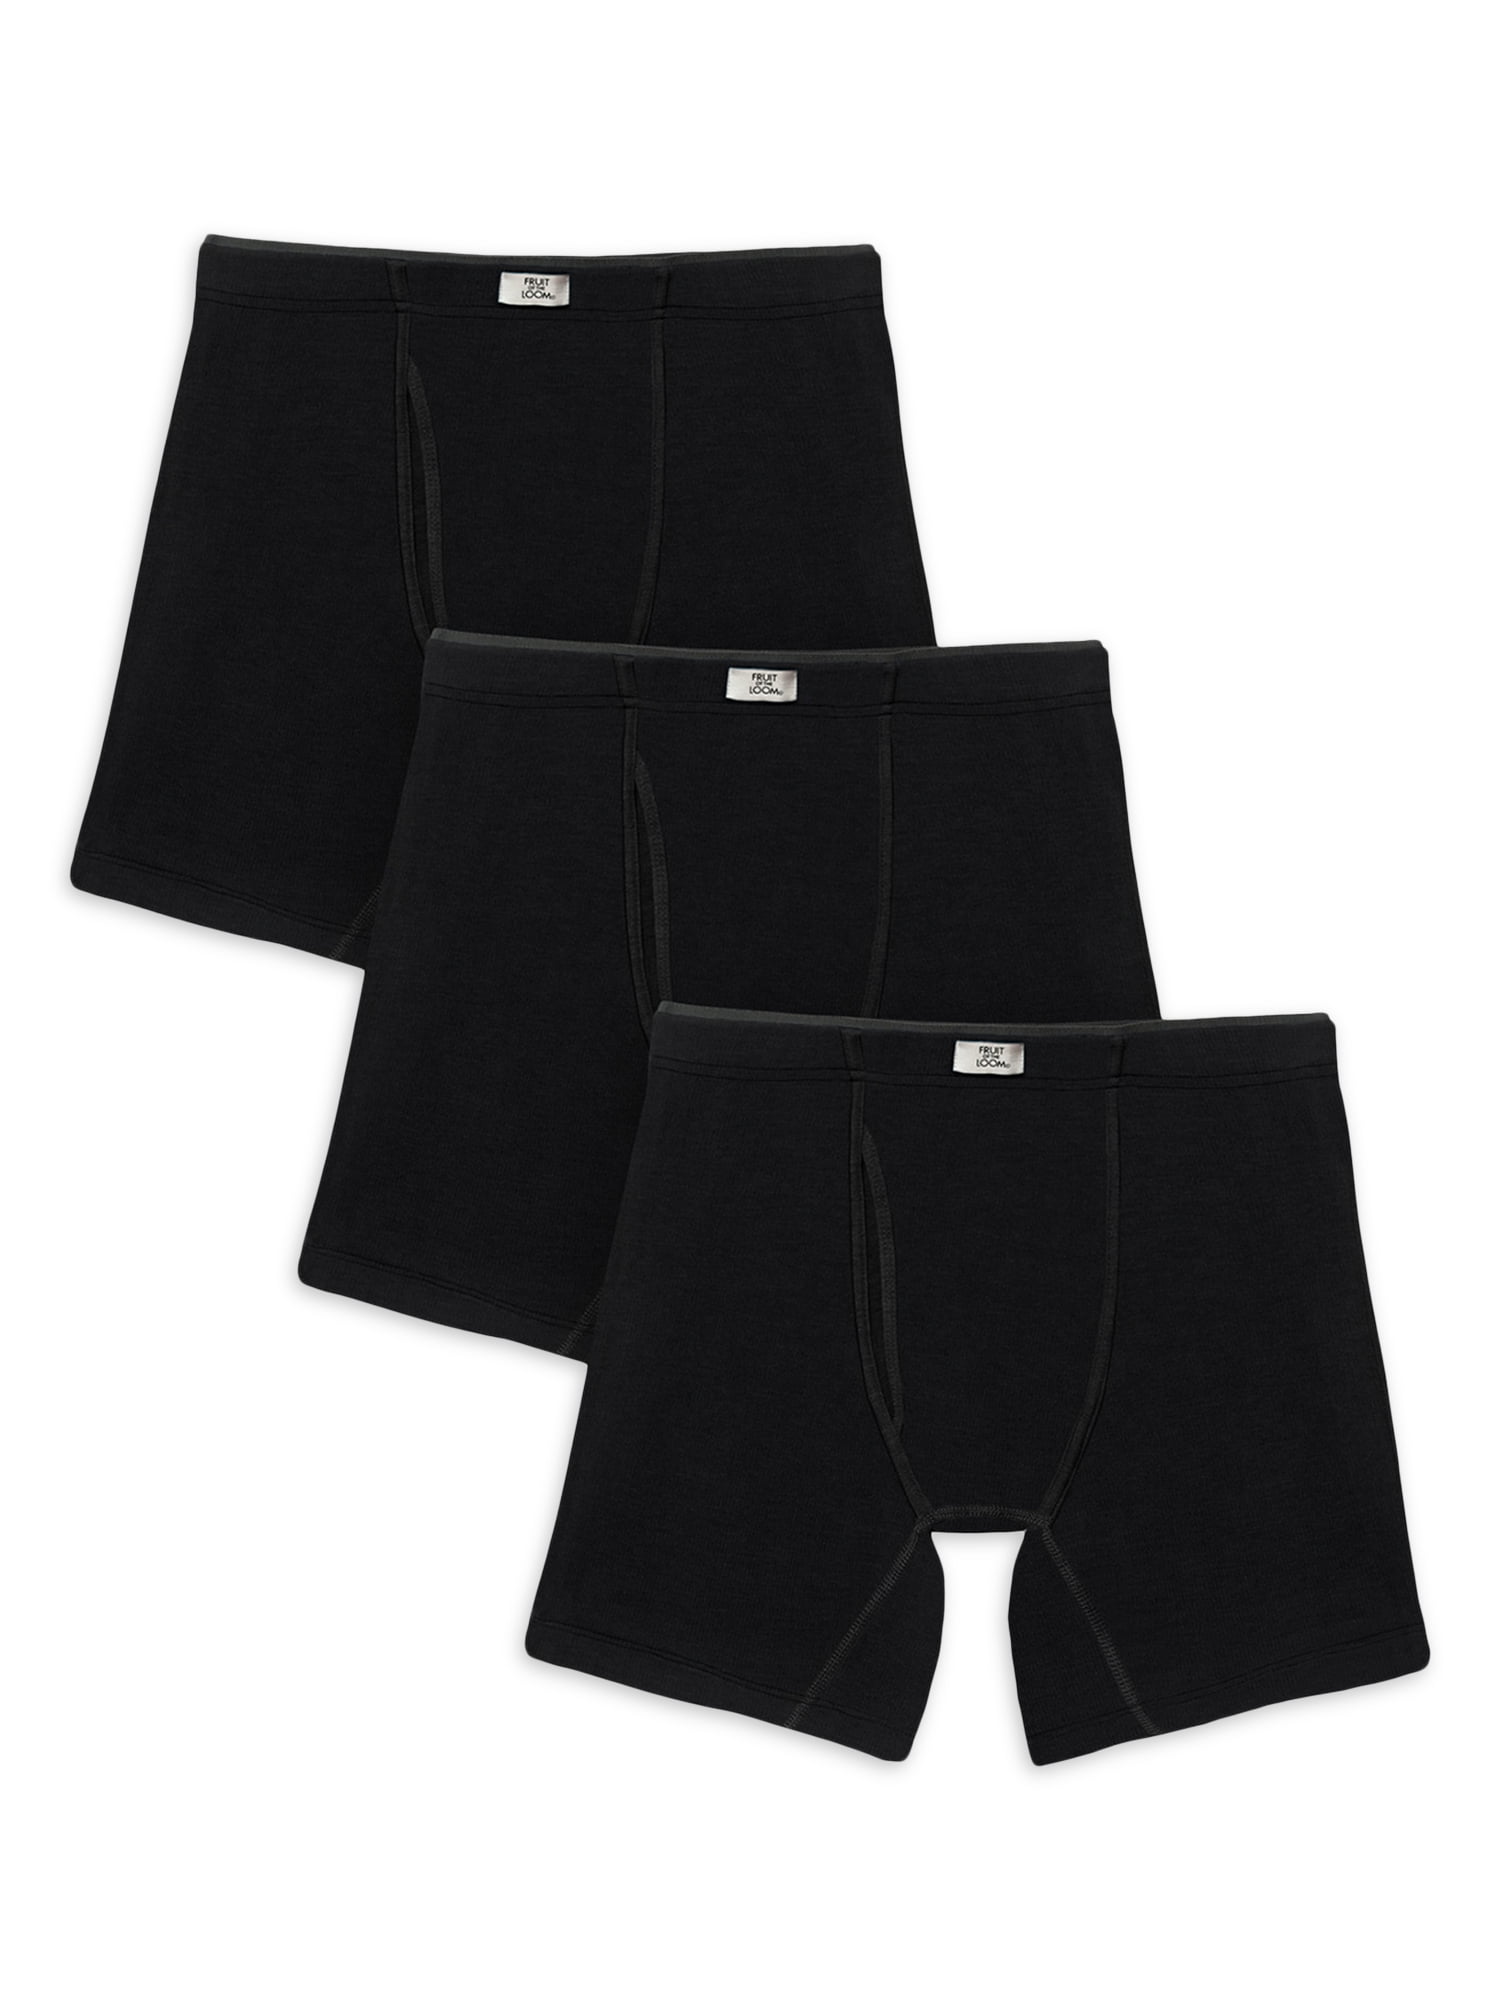 Fruit of the Loom Men's Long Leg Boxer Briefs Underwear 3 Pack Lot S M L XL 2X 